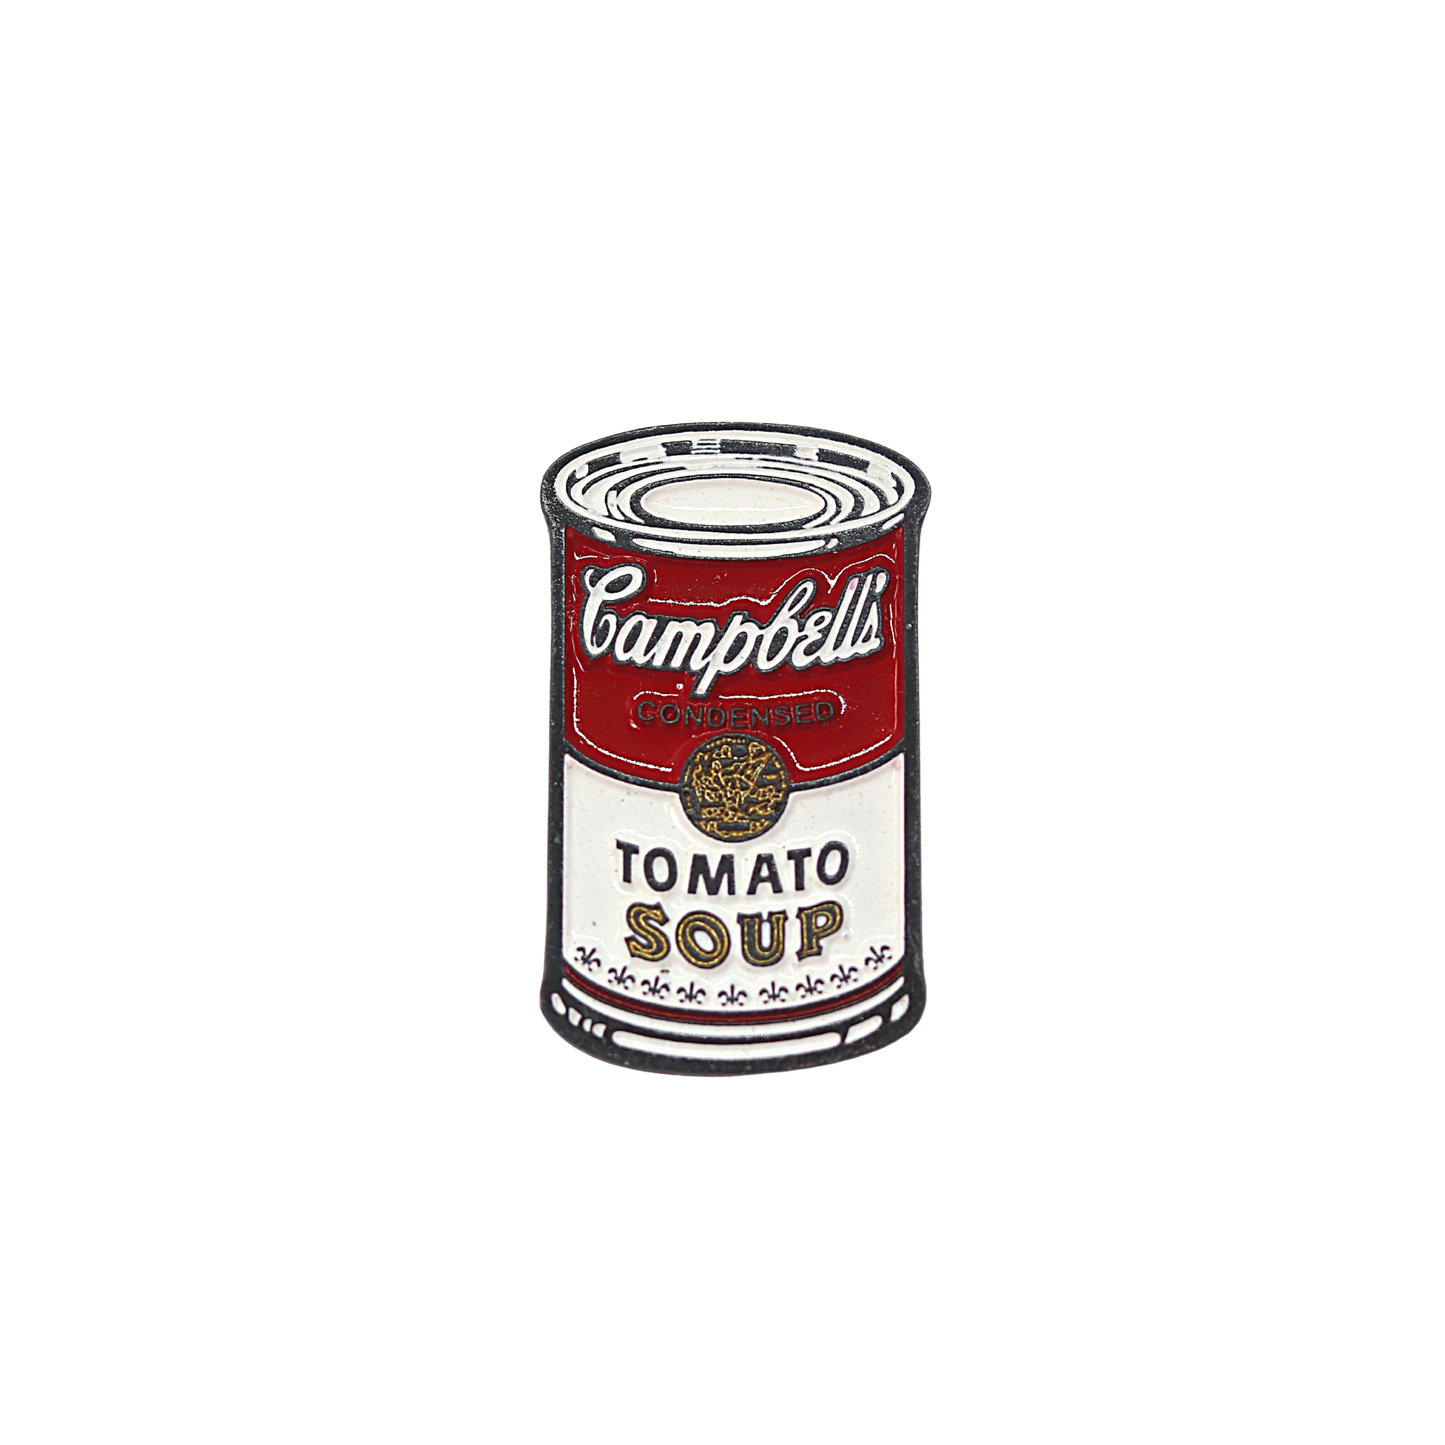 Campbells Soup Pin Original